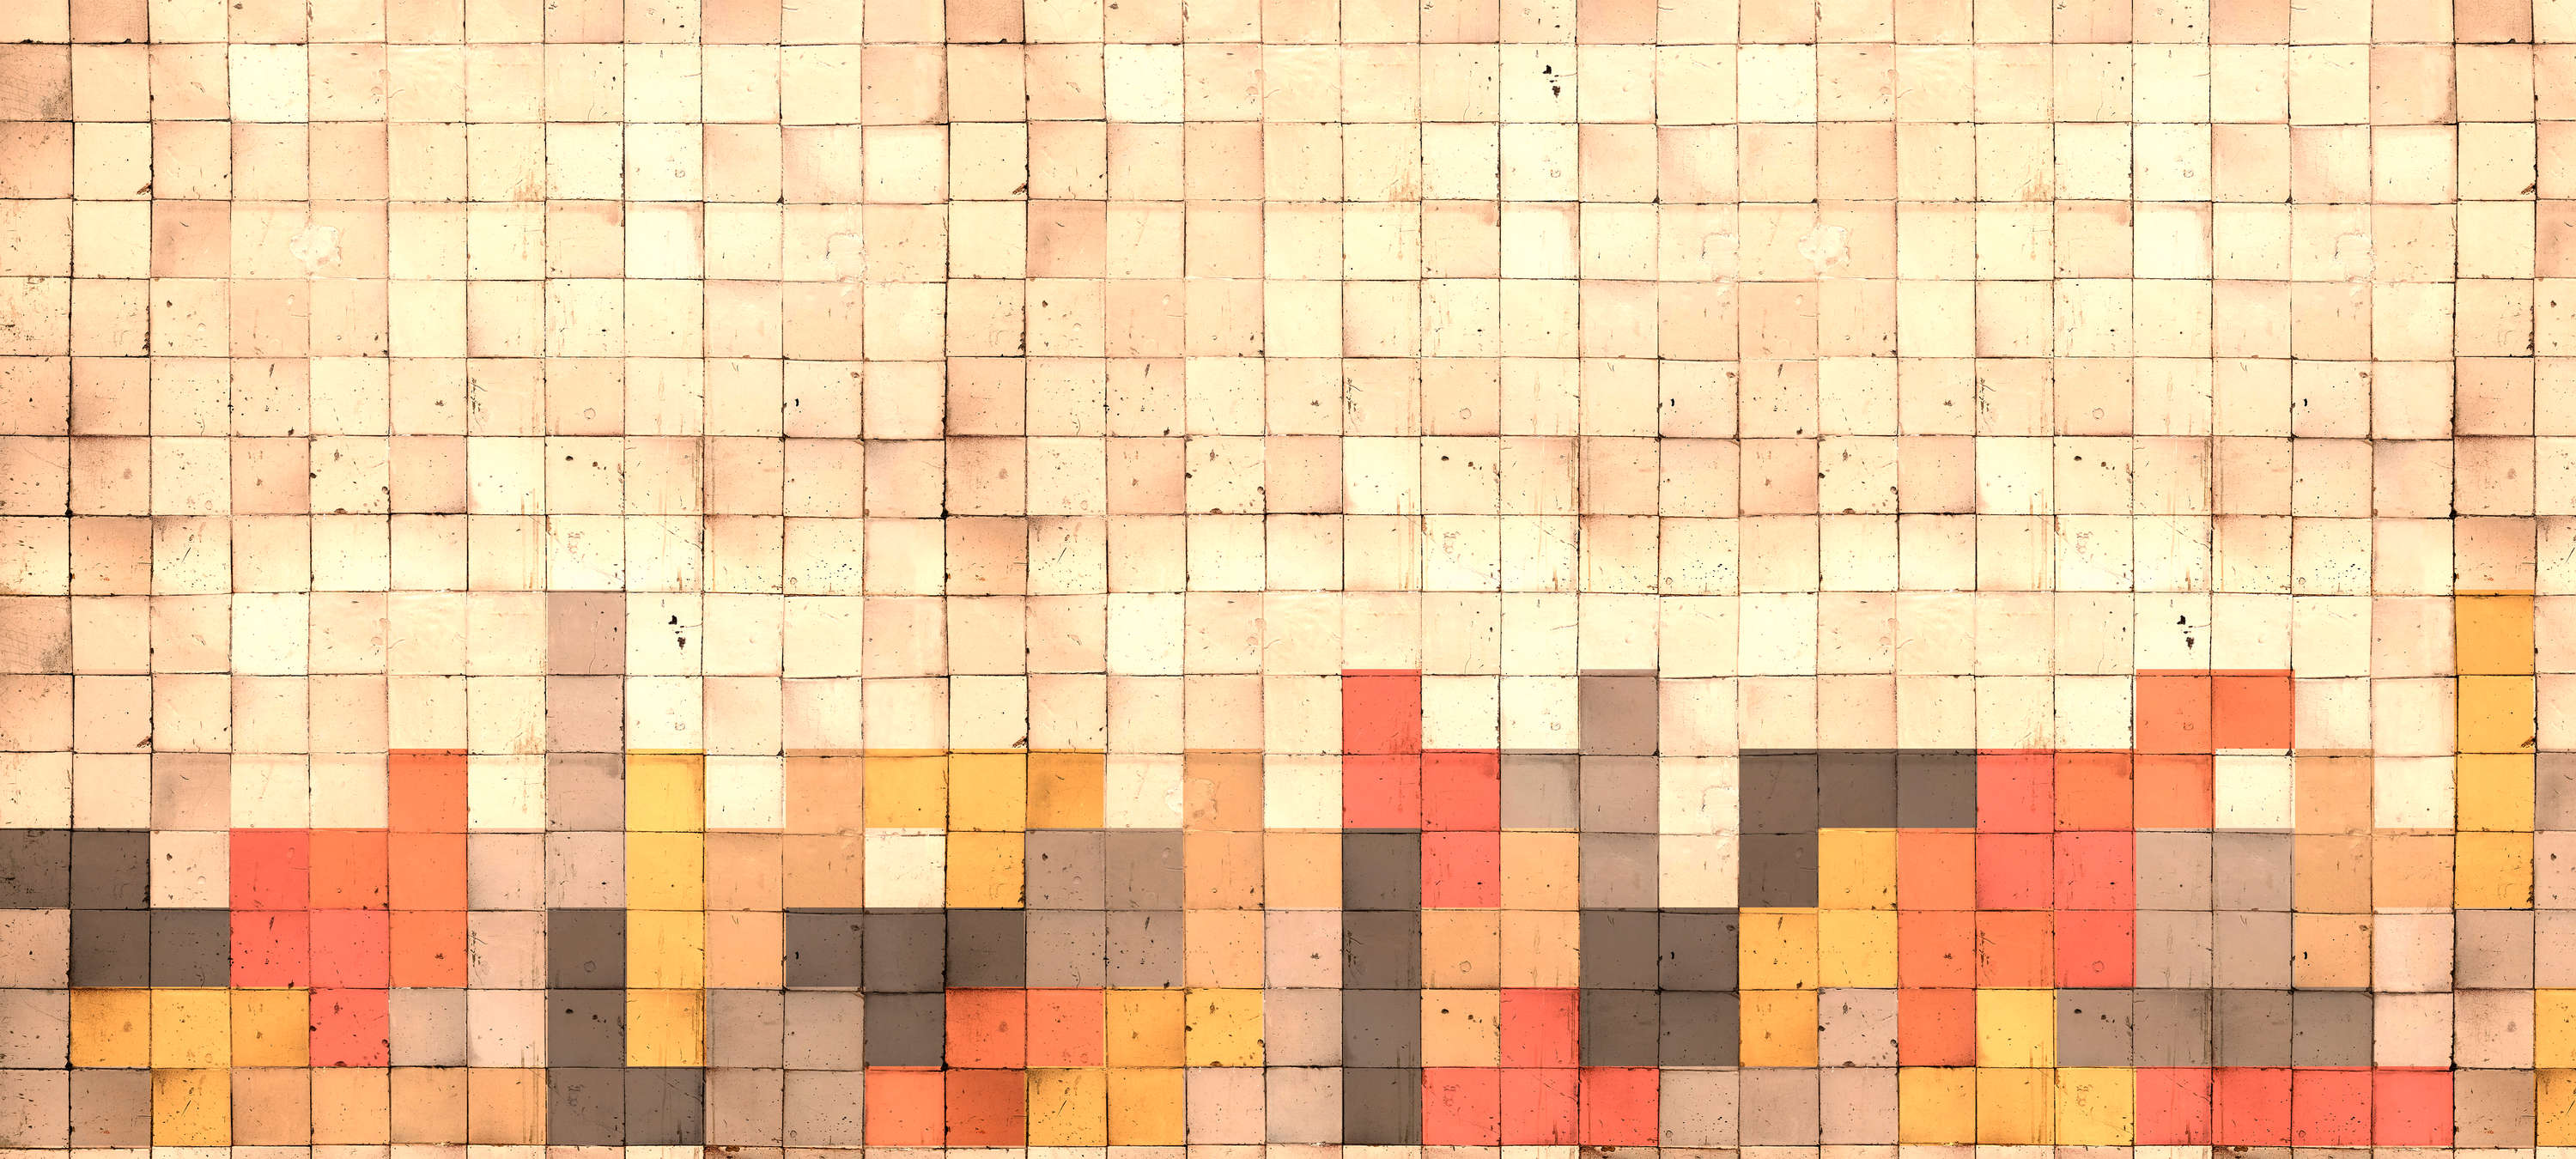             Fotomurali stile Tetris, cemento 3D, mosaico di cubi - Giallo, Arancione, Rosso
        